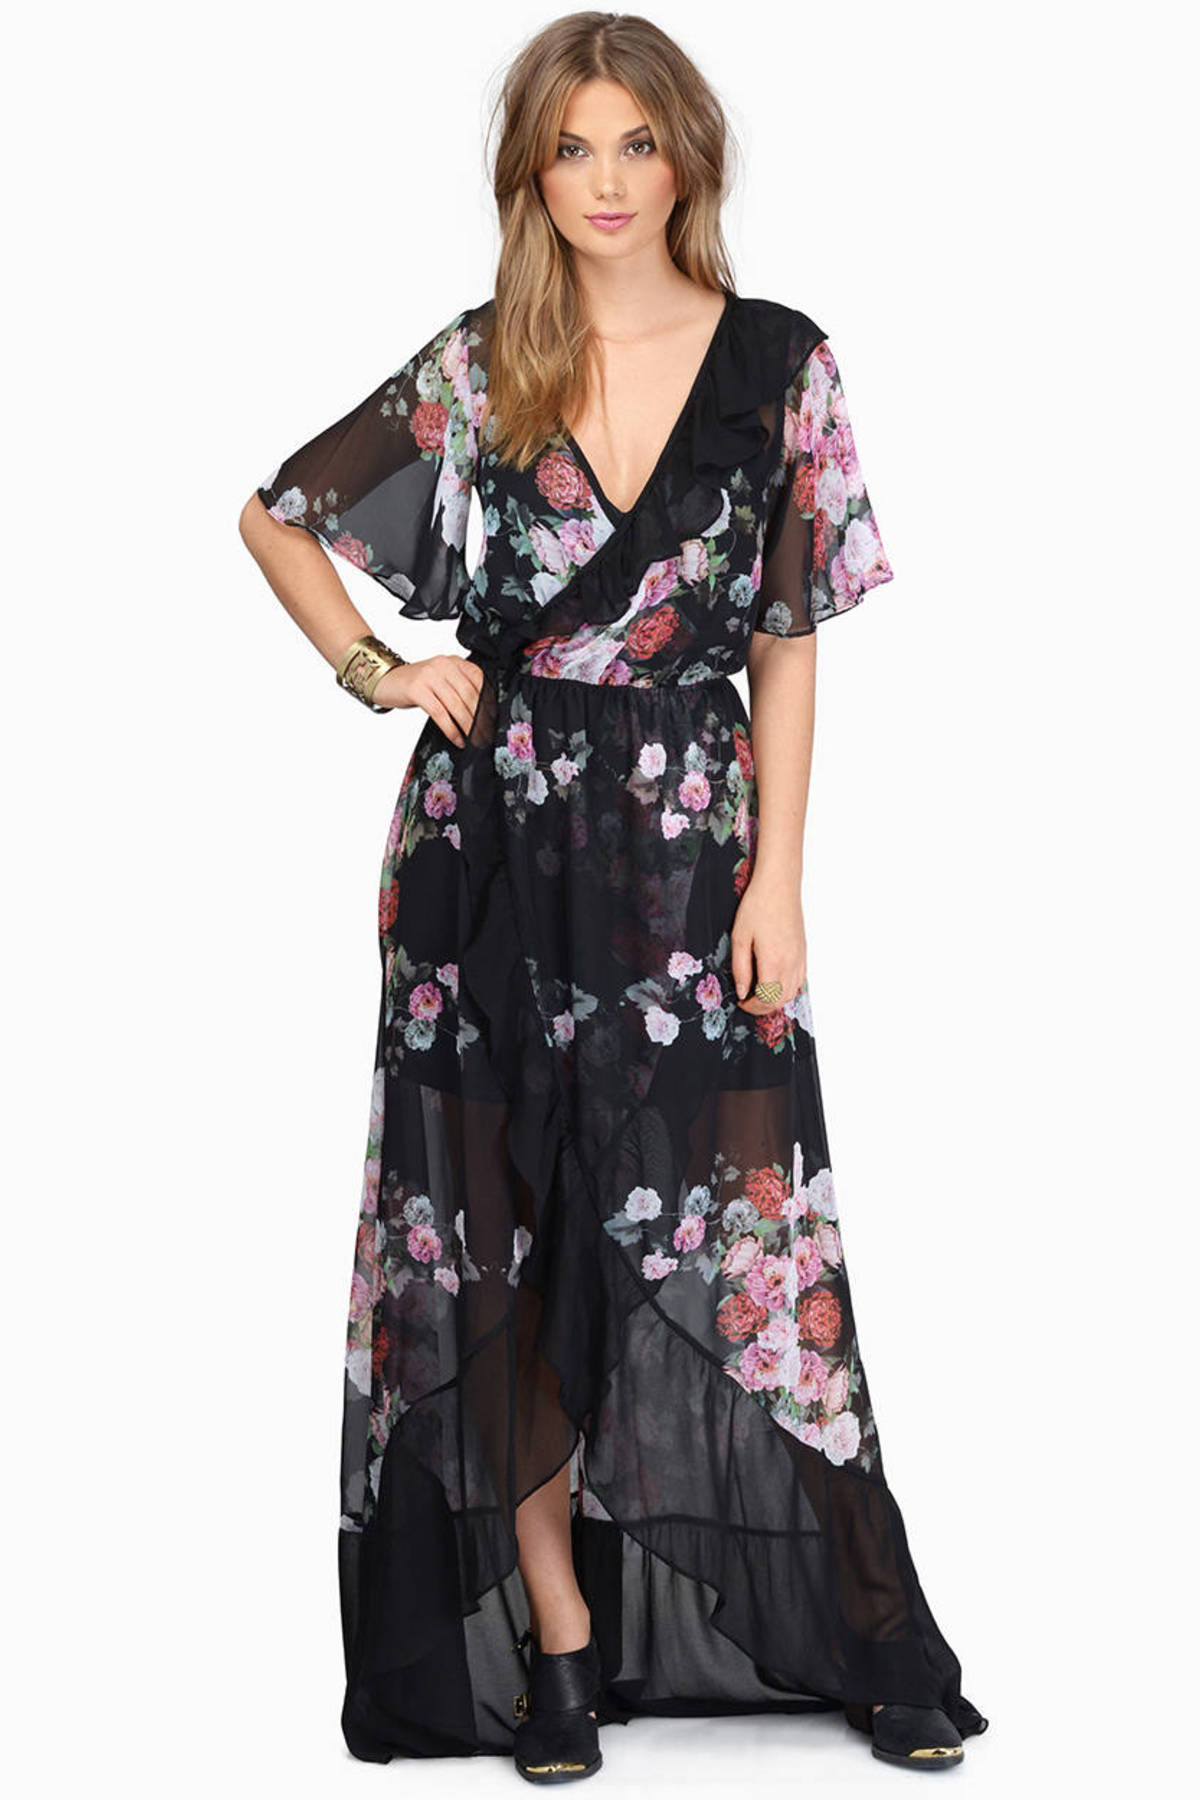 Summer Waves Maxi Dress in Black Floral - $18 | Tobi US